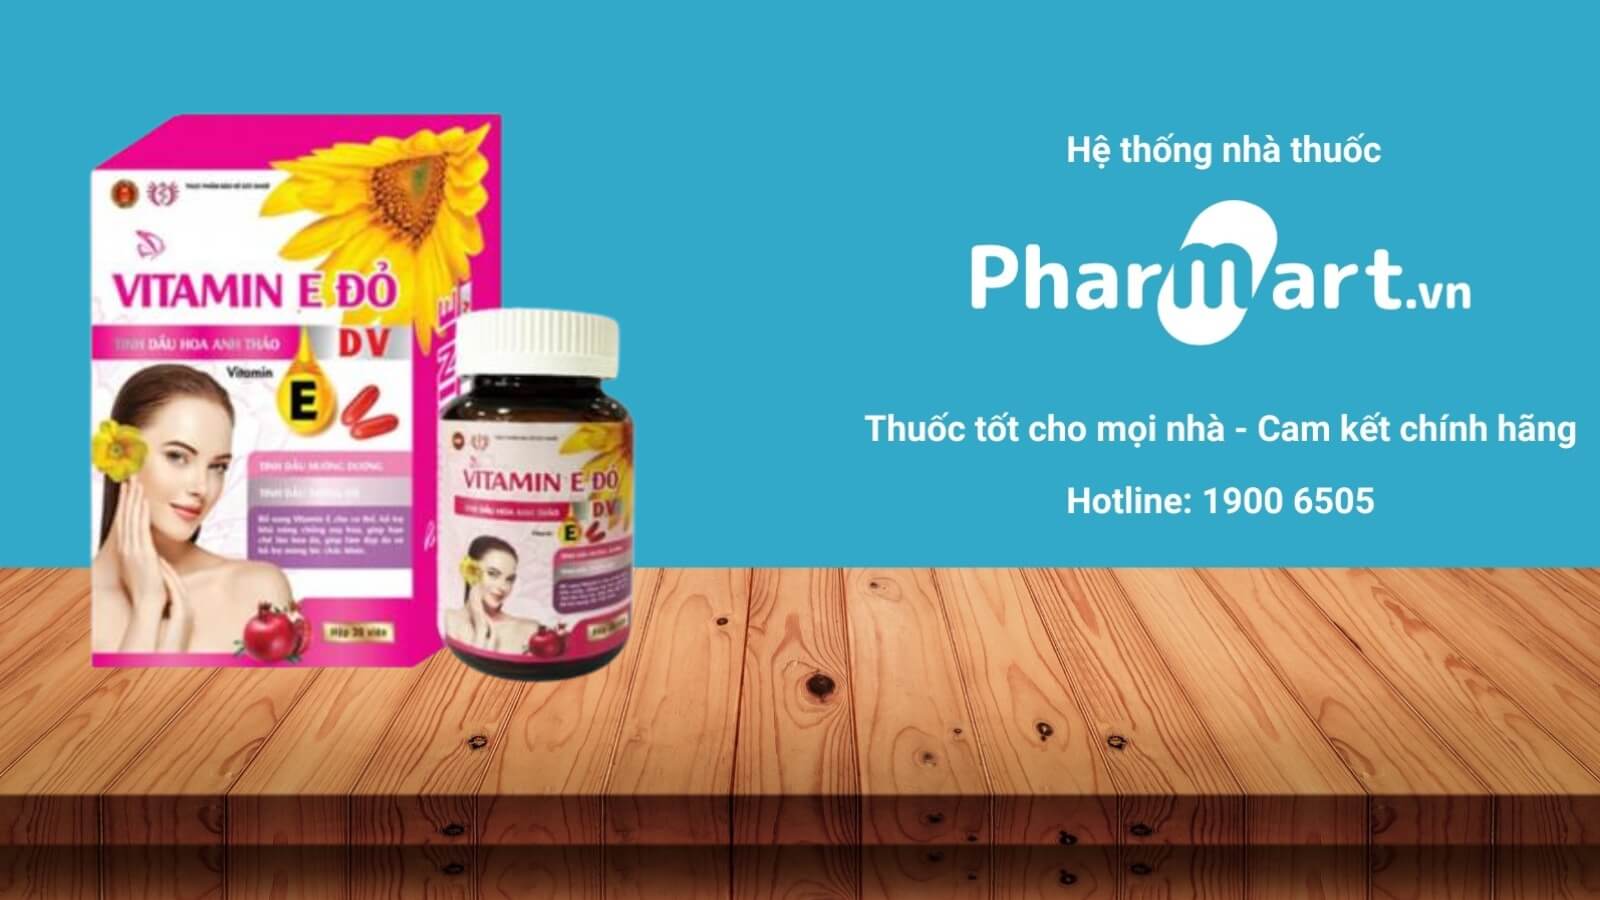 Mua Vitamin E đỏ Dược Vương tại Pharmart.vn